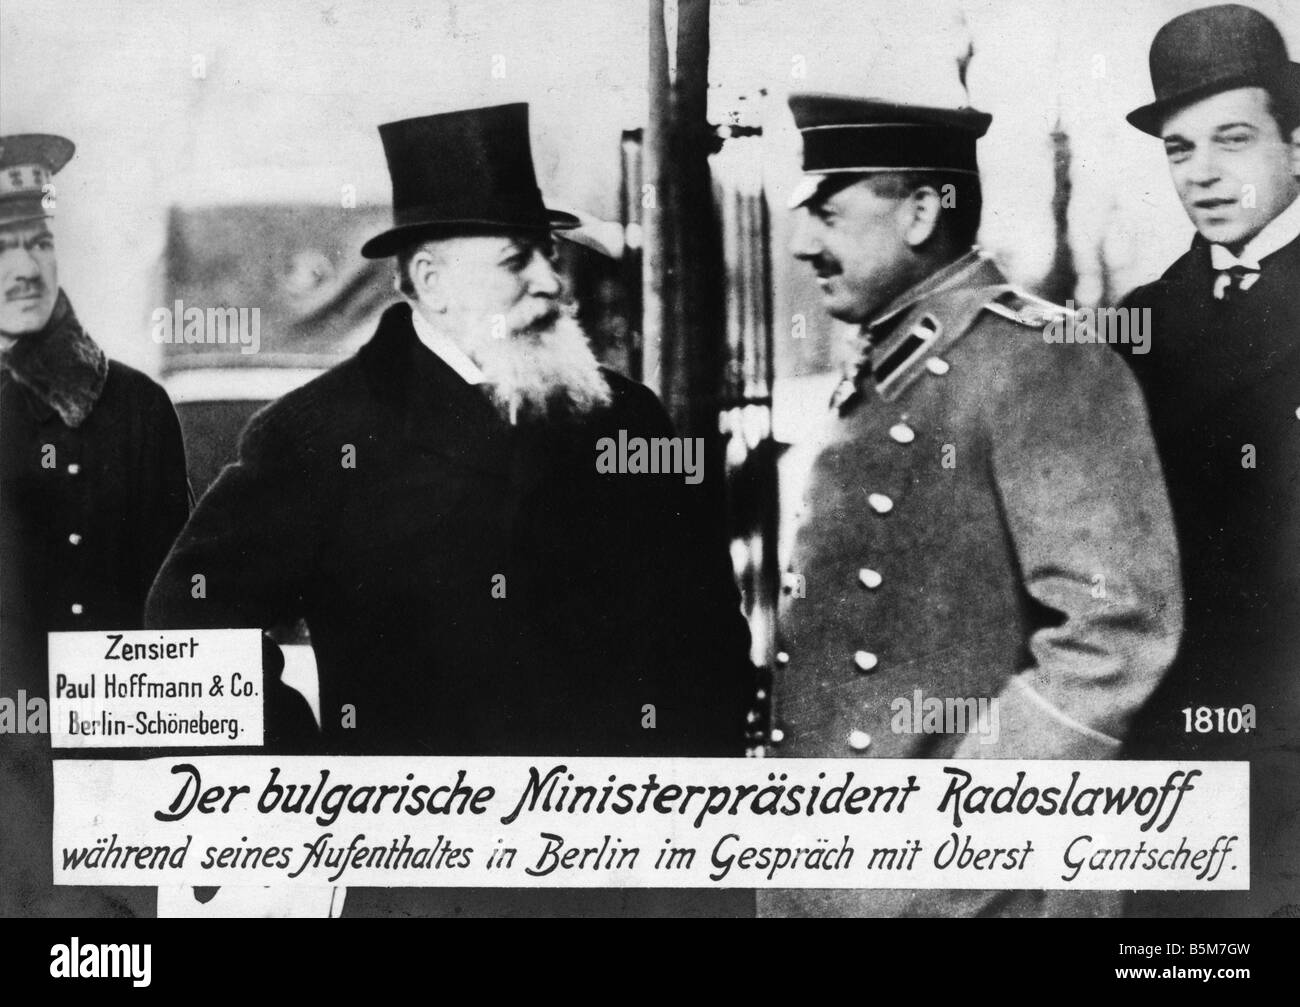 1BU 31 F1915 E Radoslavov Col Gantscheff in Berlin Radoslavov Vassil bulgarische Politiker Premierminister 1886 und 1913 18 11 Mar Stockfoto